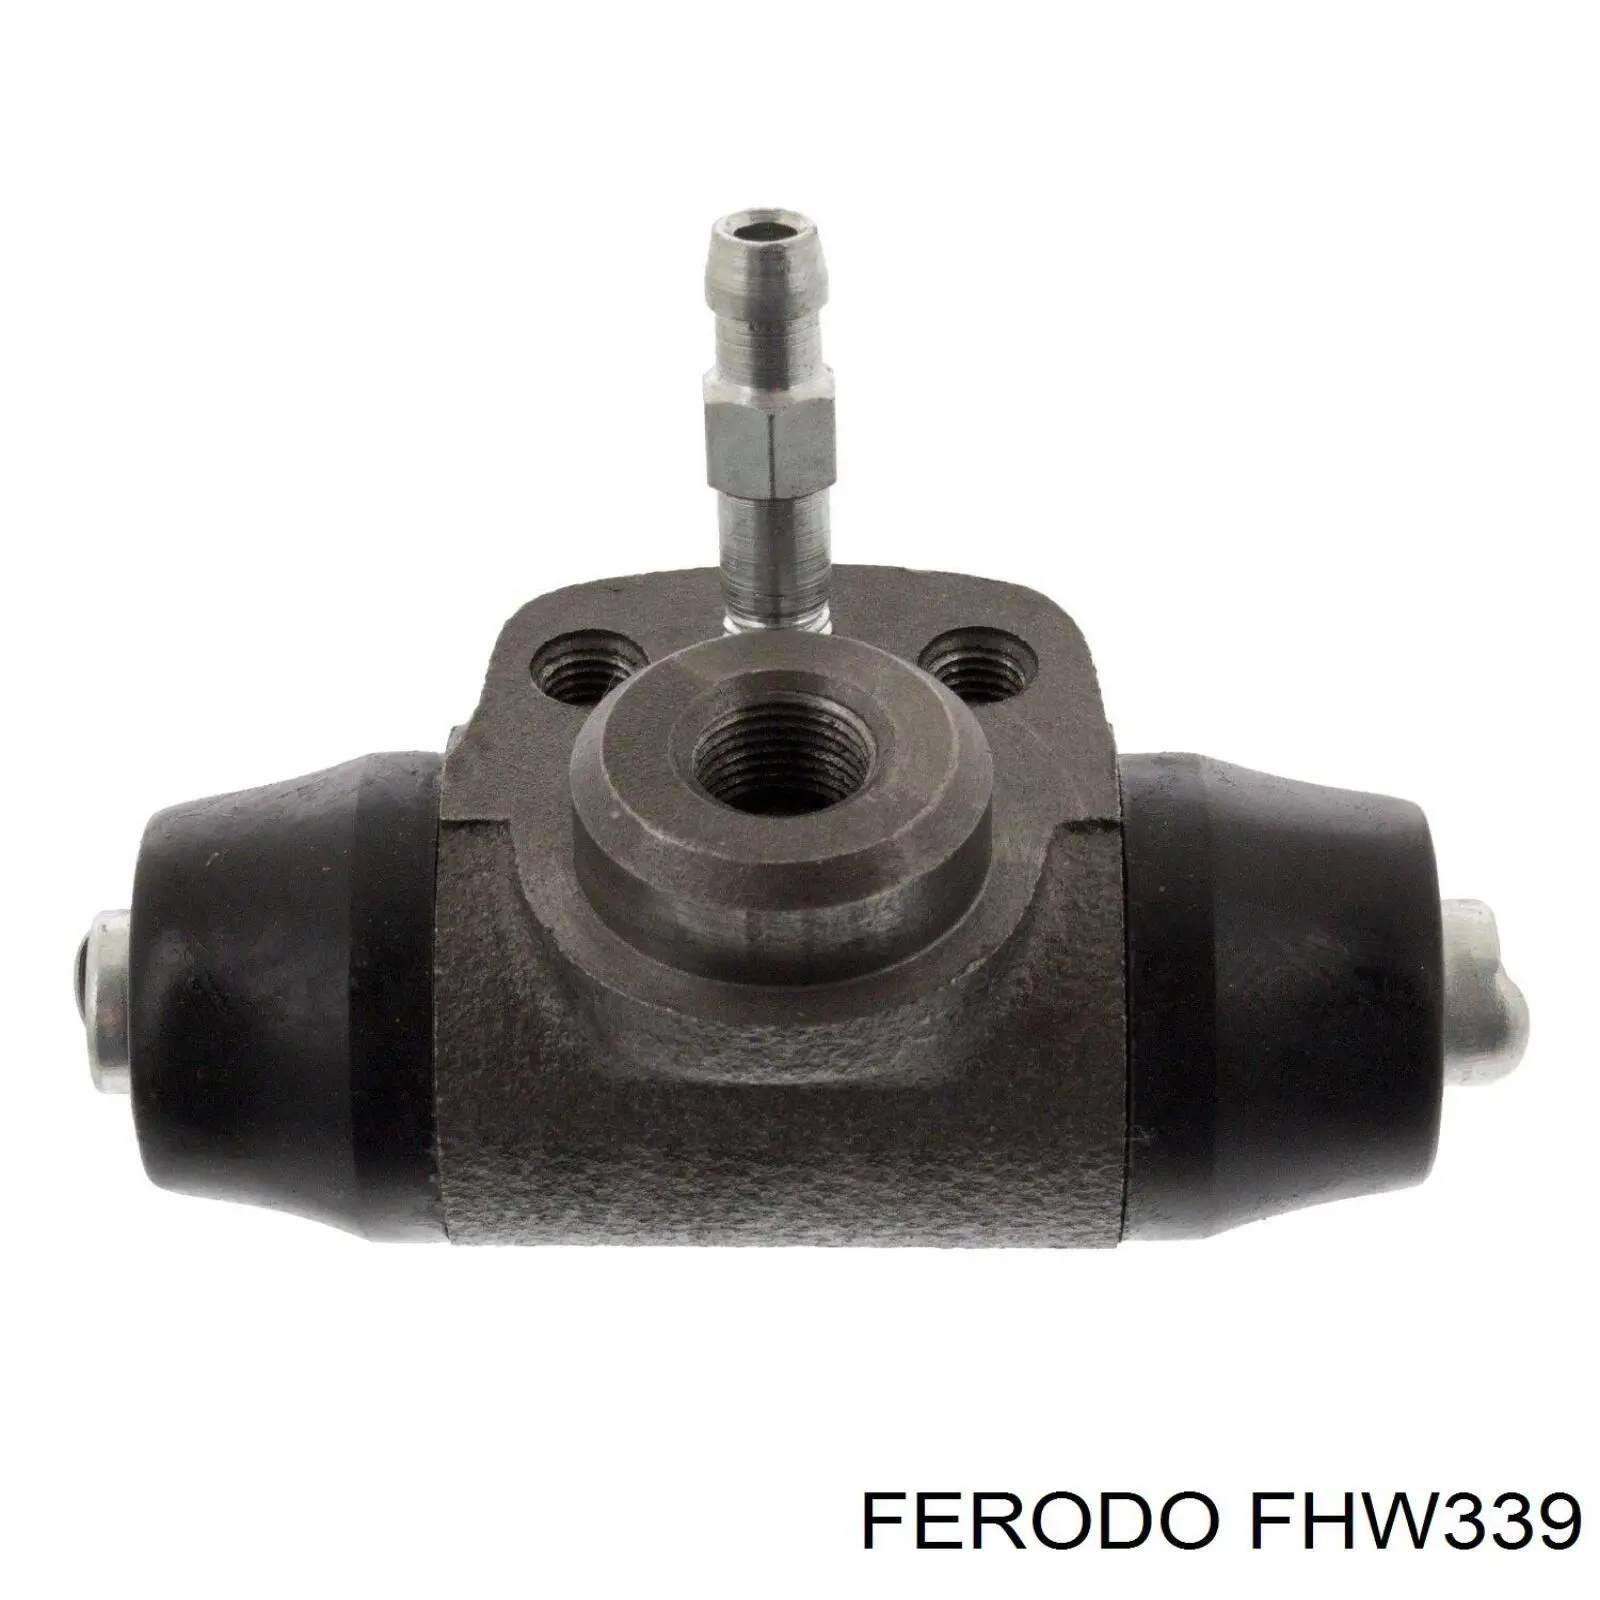 FHW339 Ferodo cilindro de freno de rueda trasero